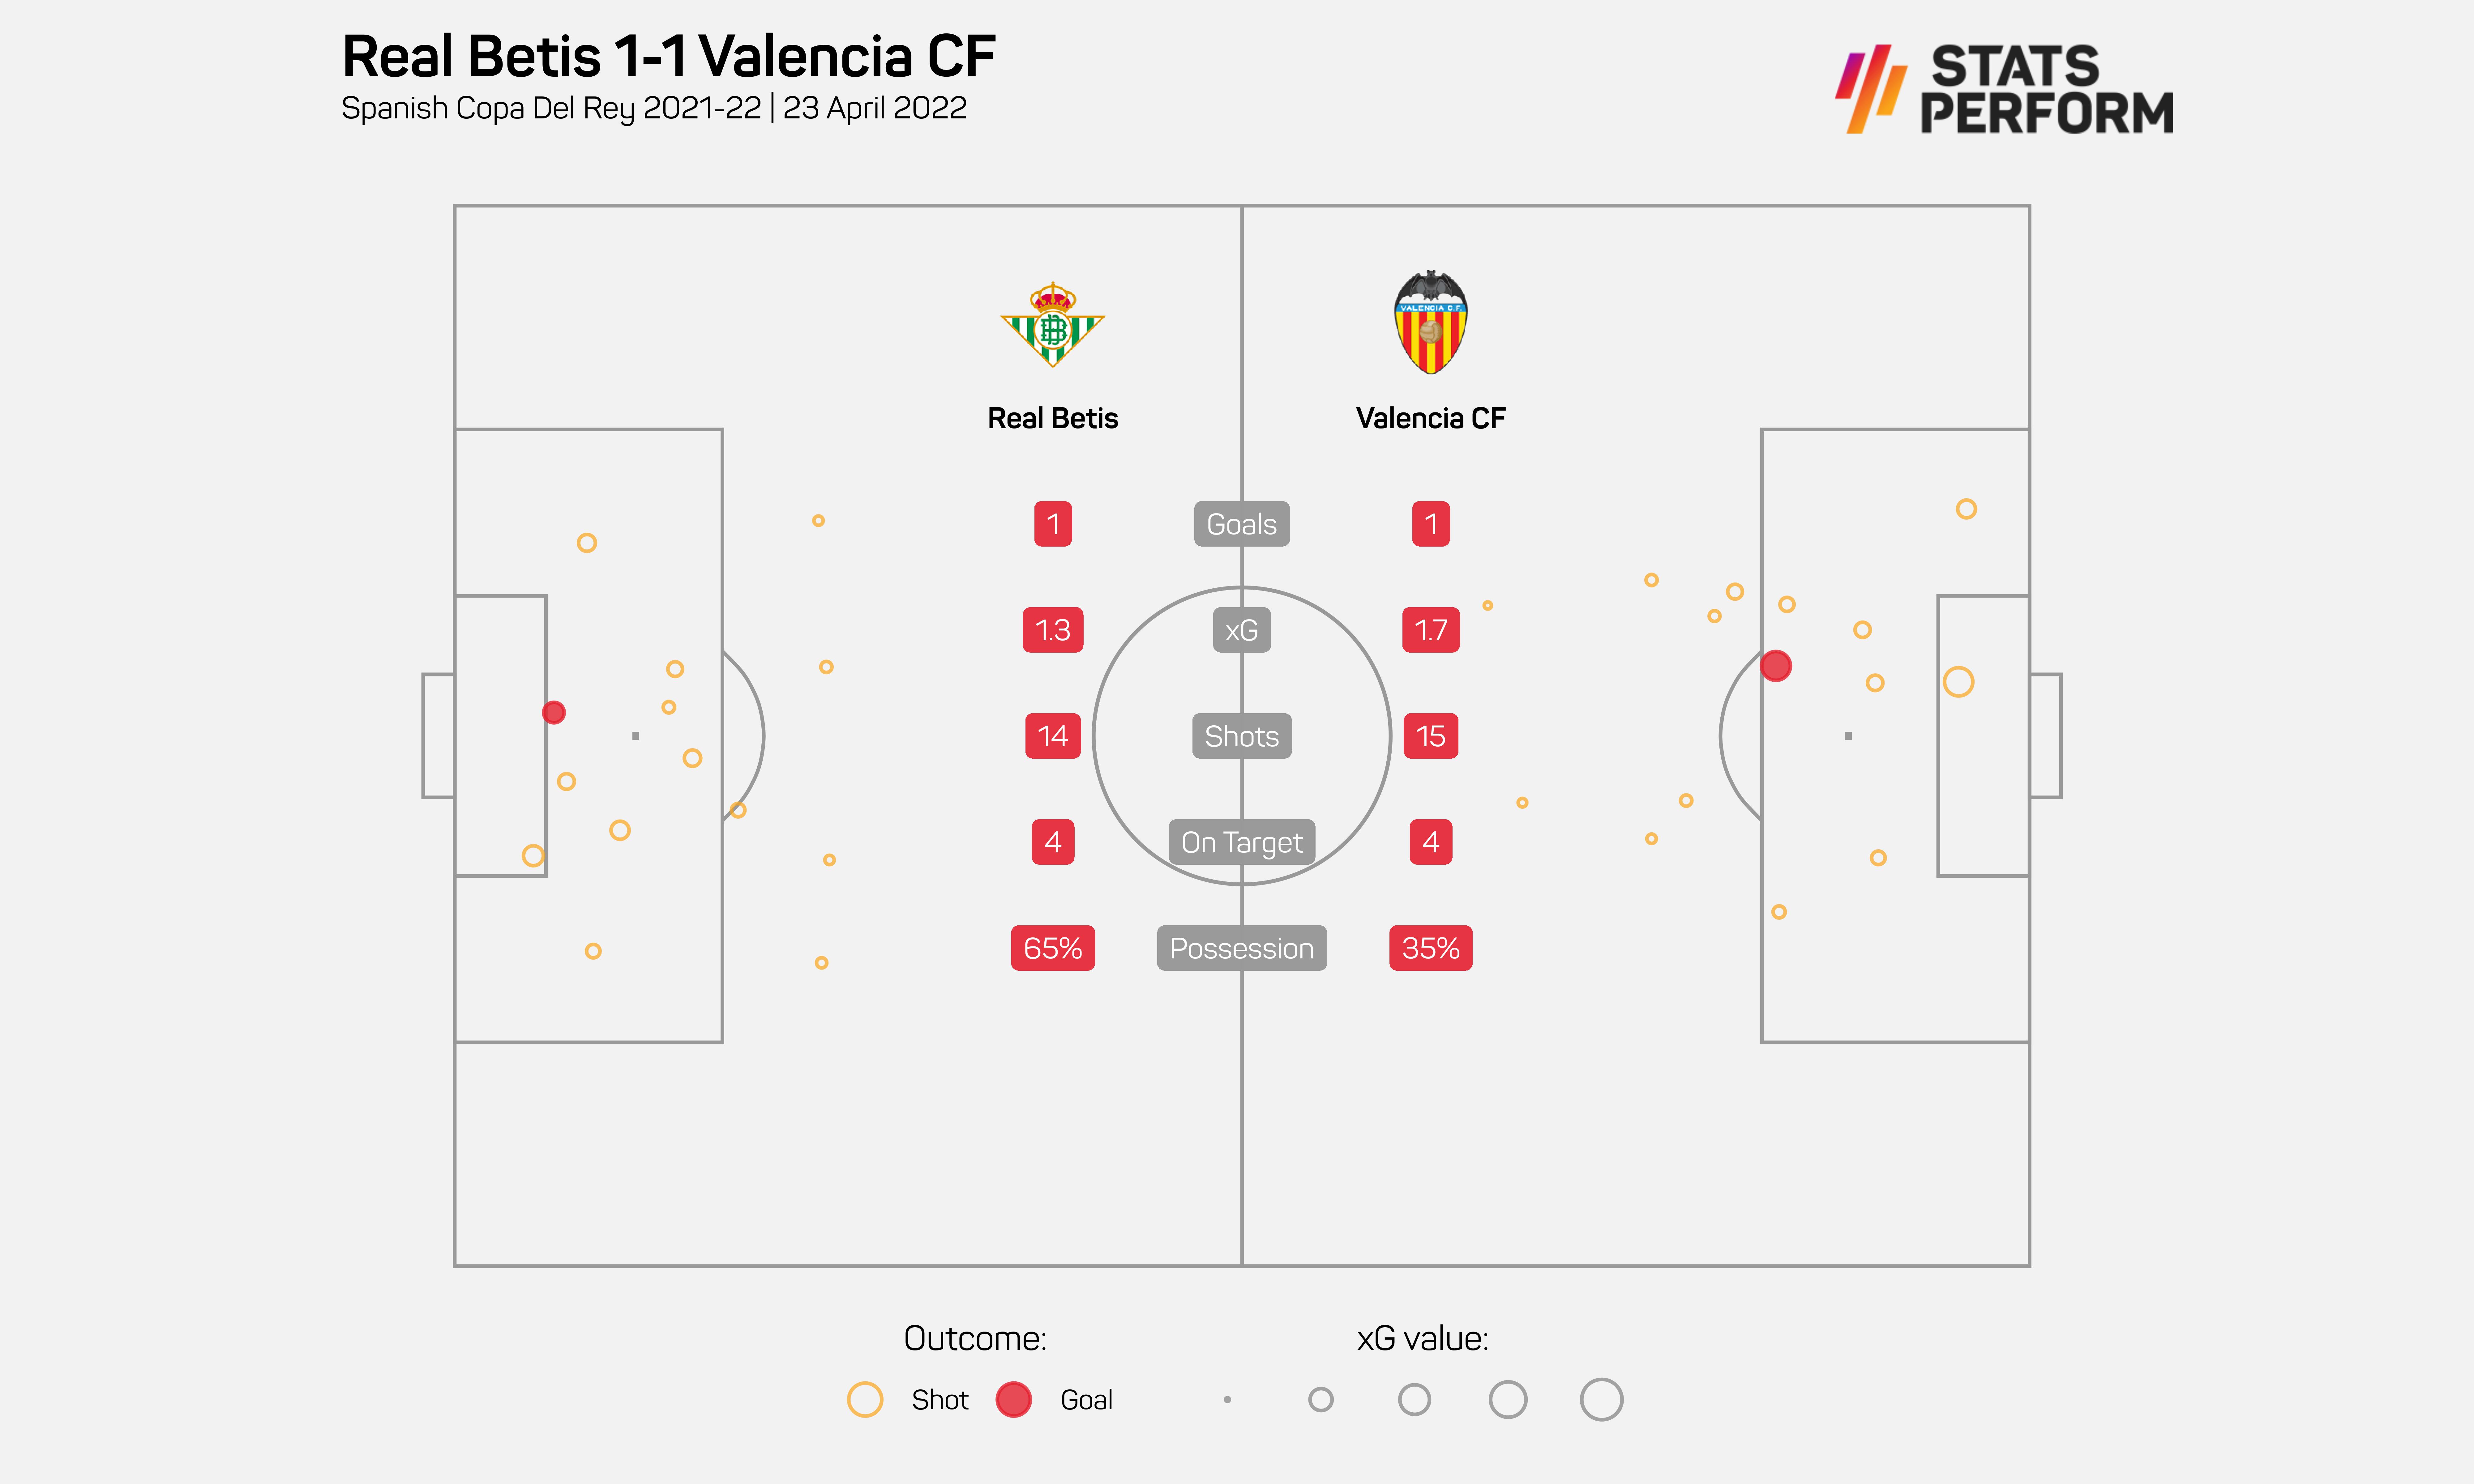 Real Betis 1-1 Valencia